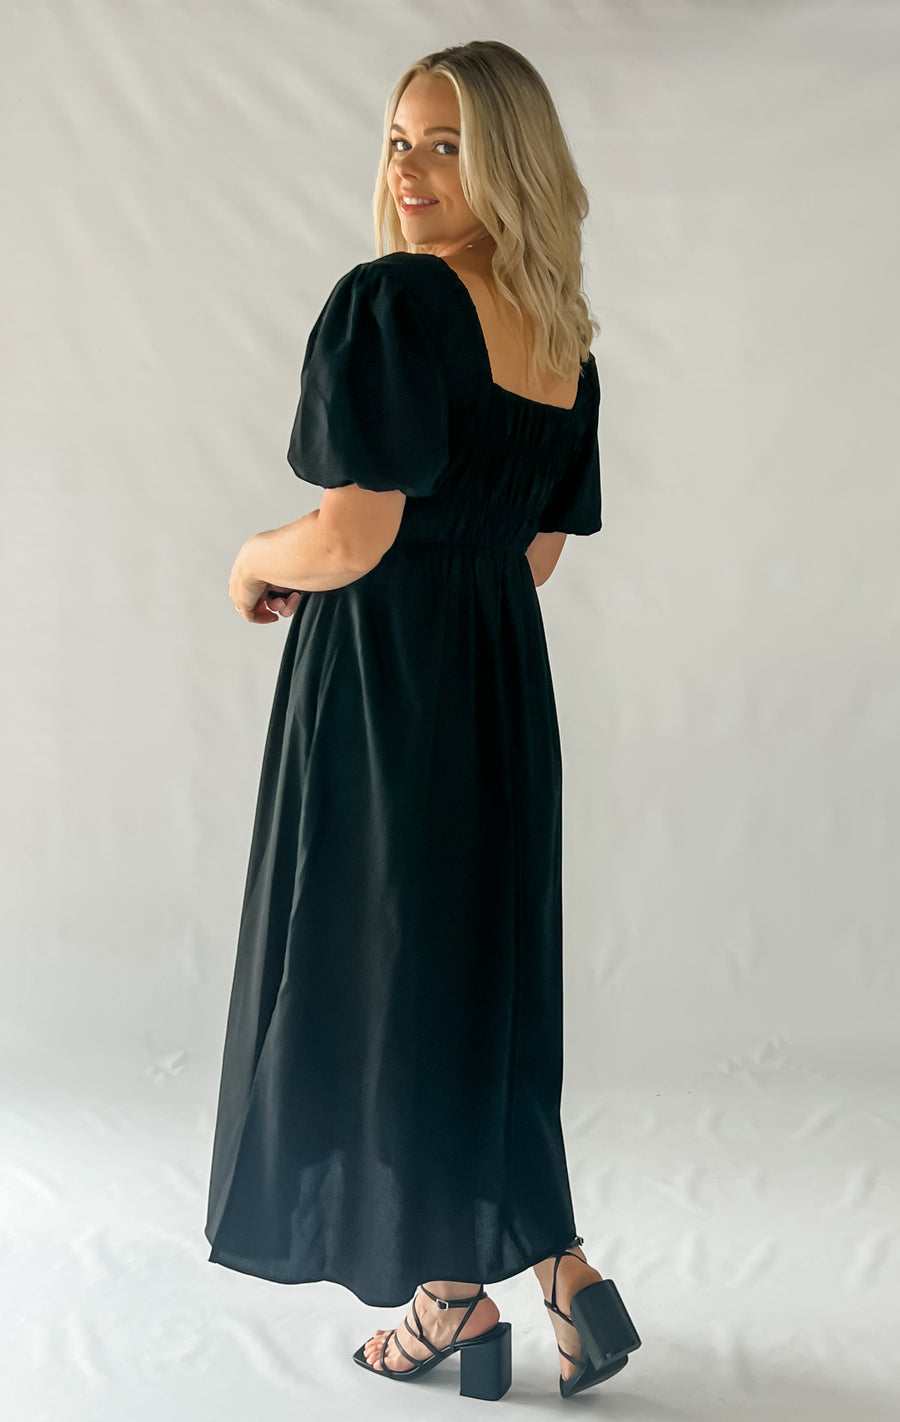 TYLER DRESS - BLACK